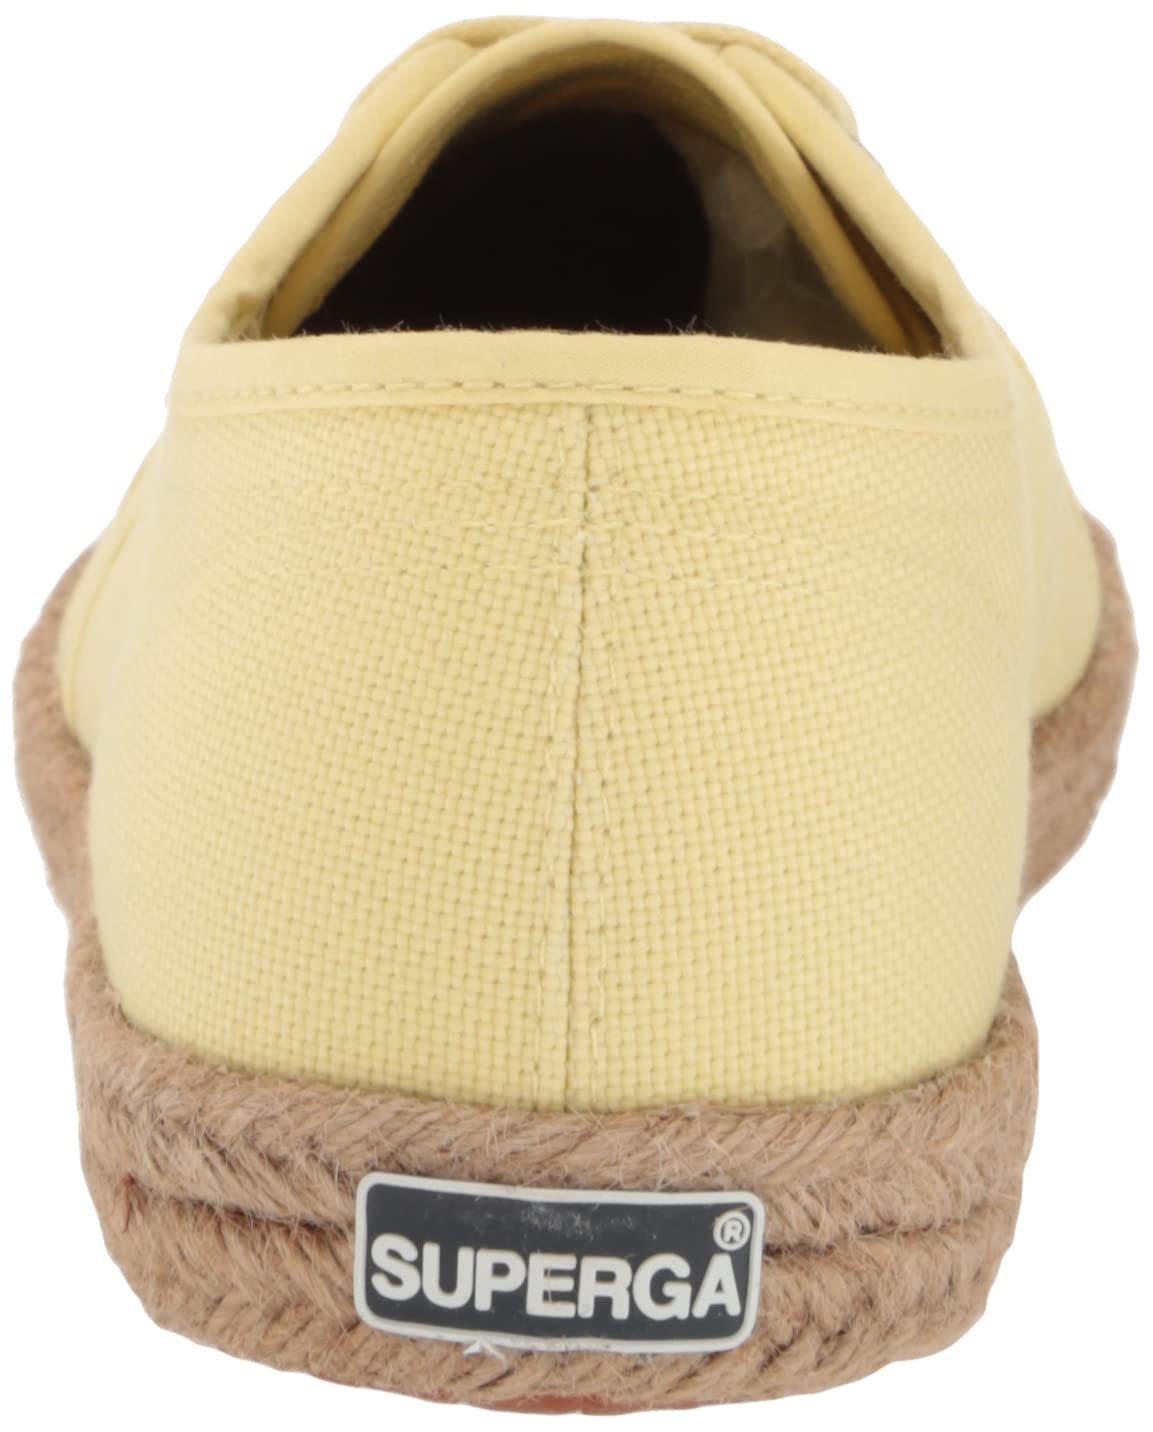 Superga Unisex-Adult S3121fw Sneaker